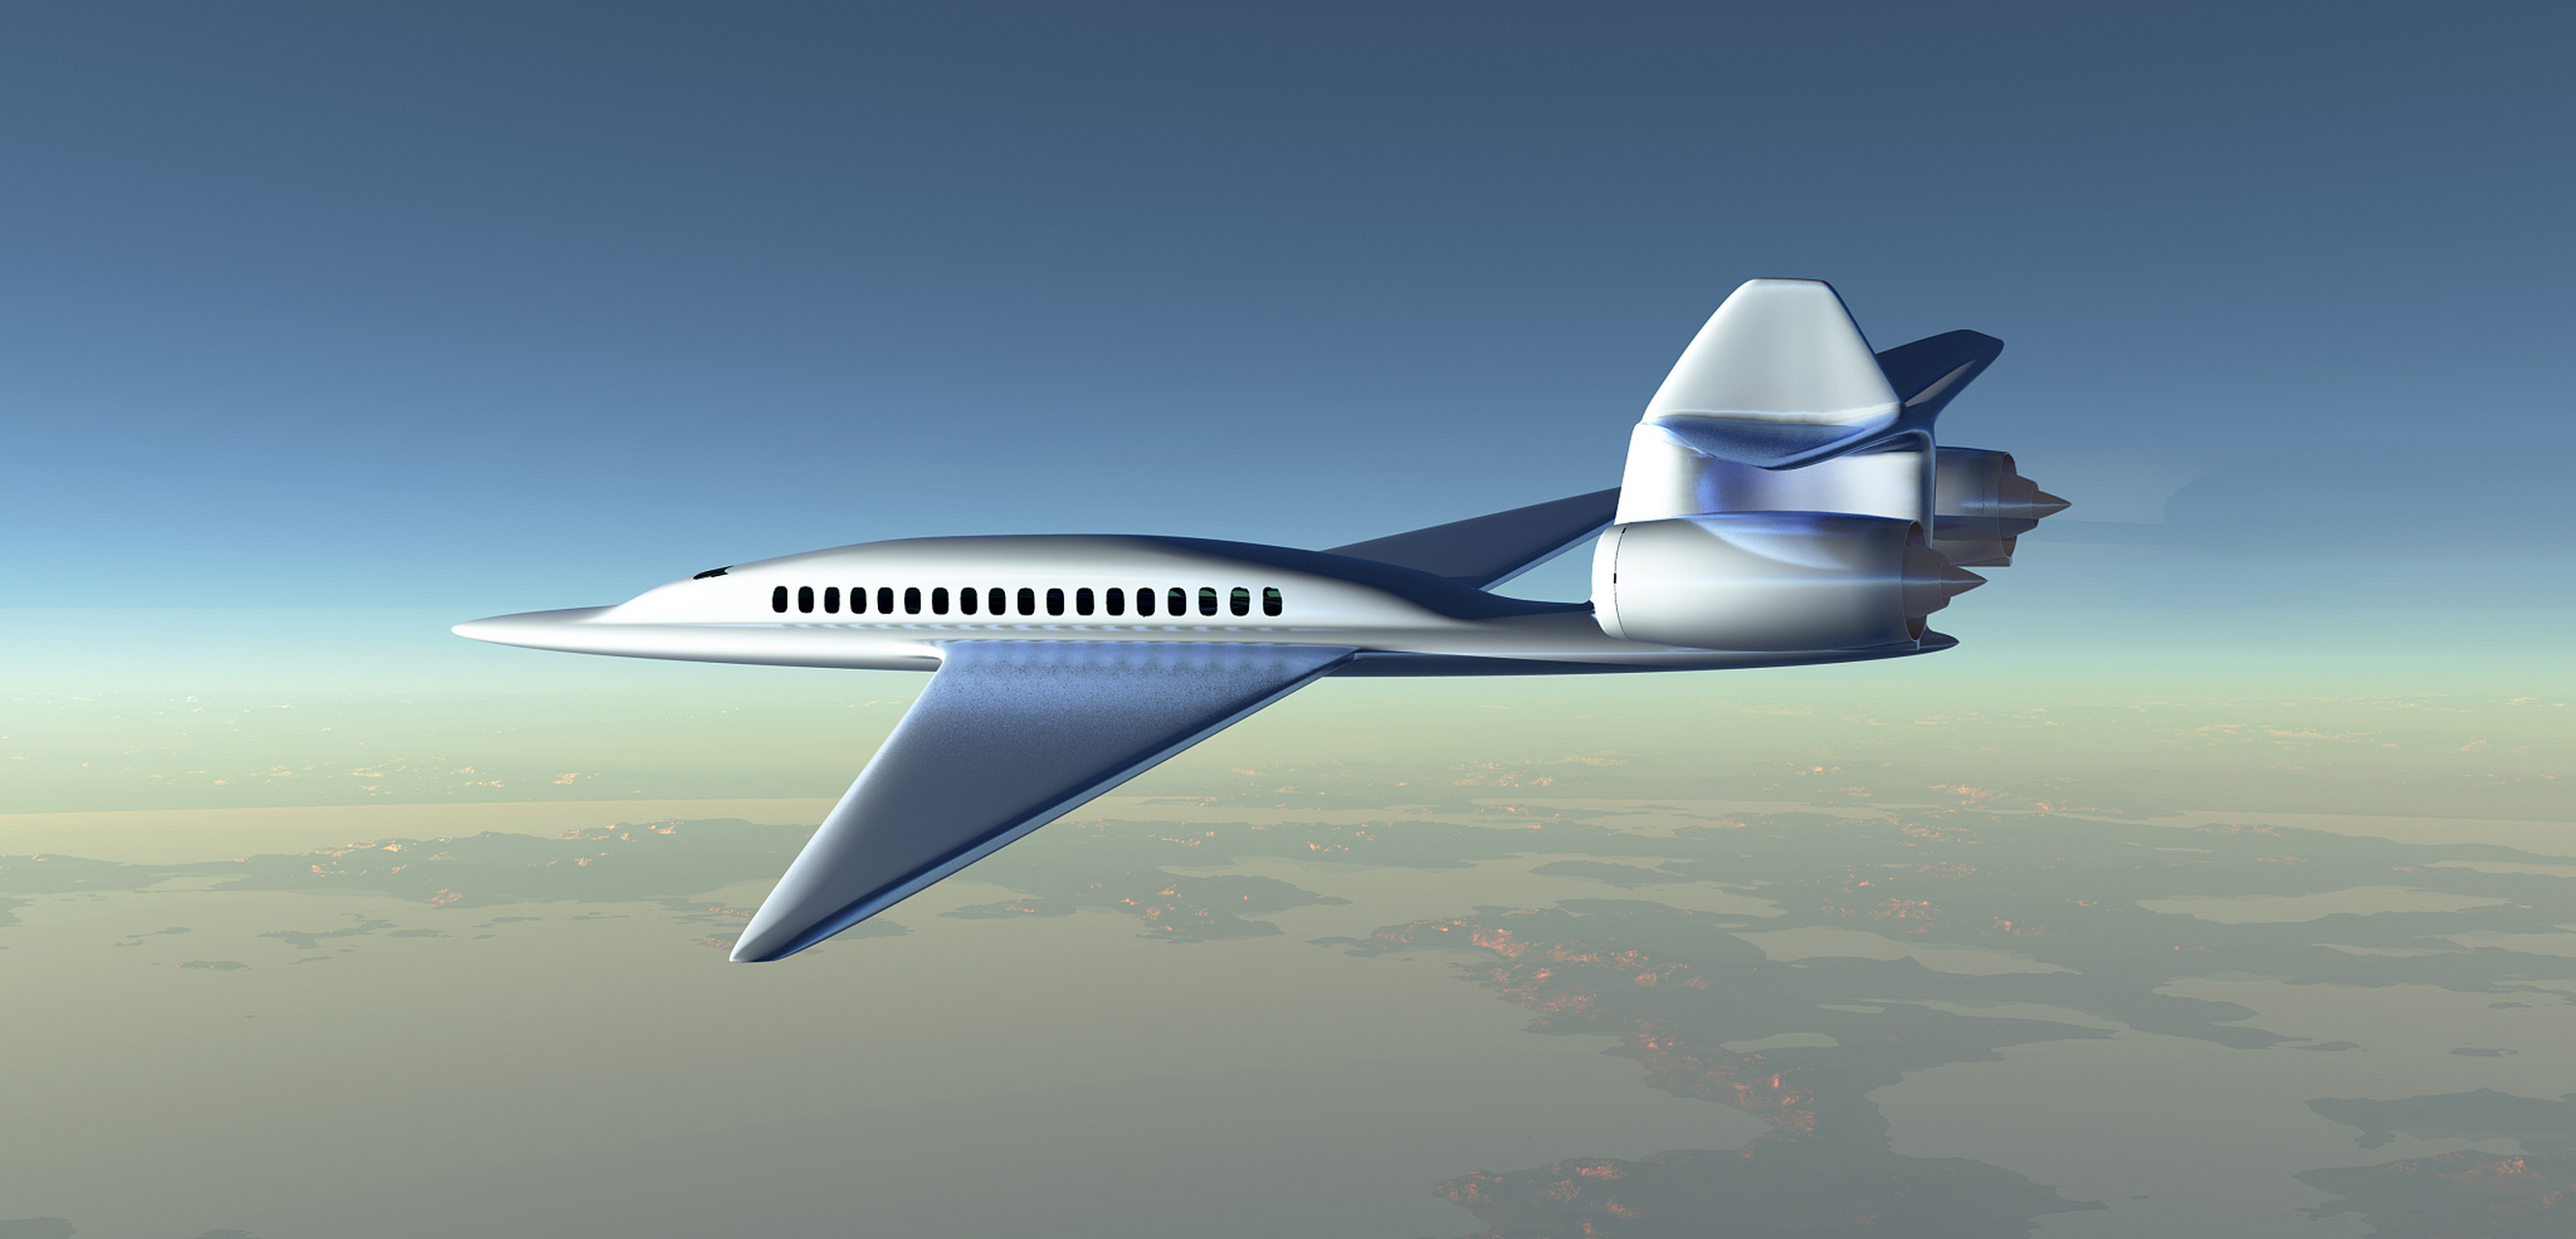 未来已来:超高速飞机将于2025年起将世界更为快捷  知名航空技术